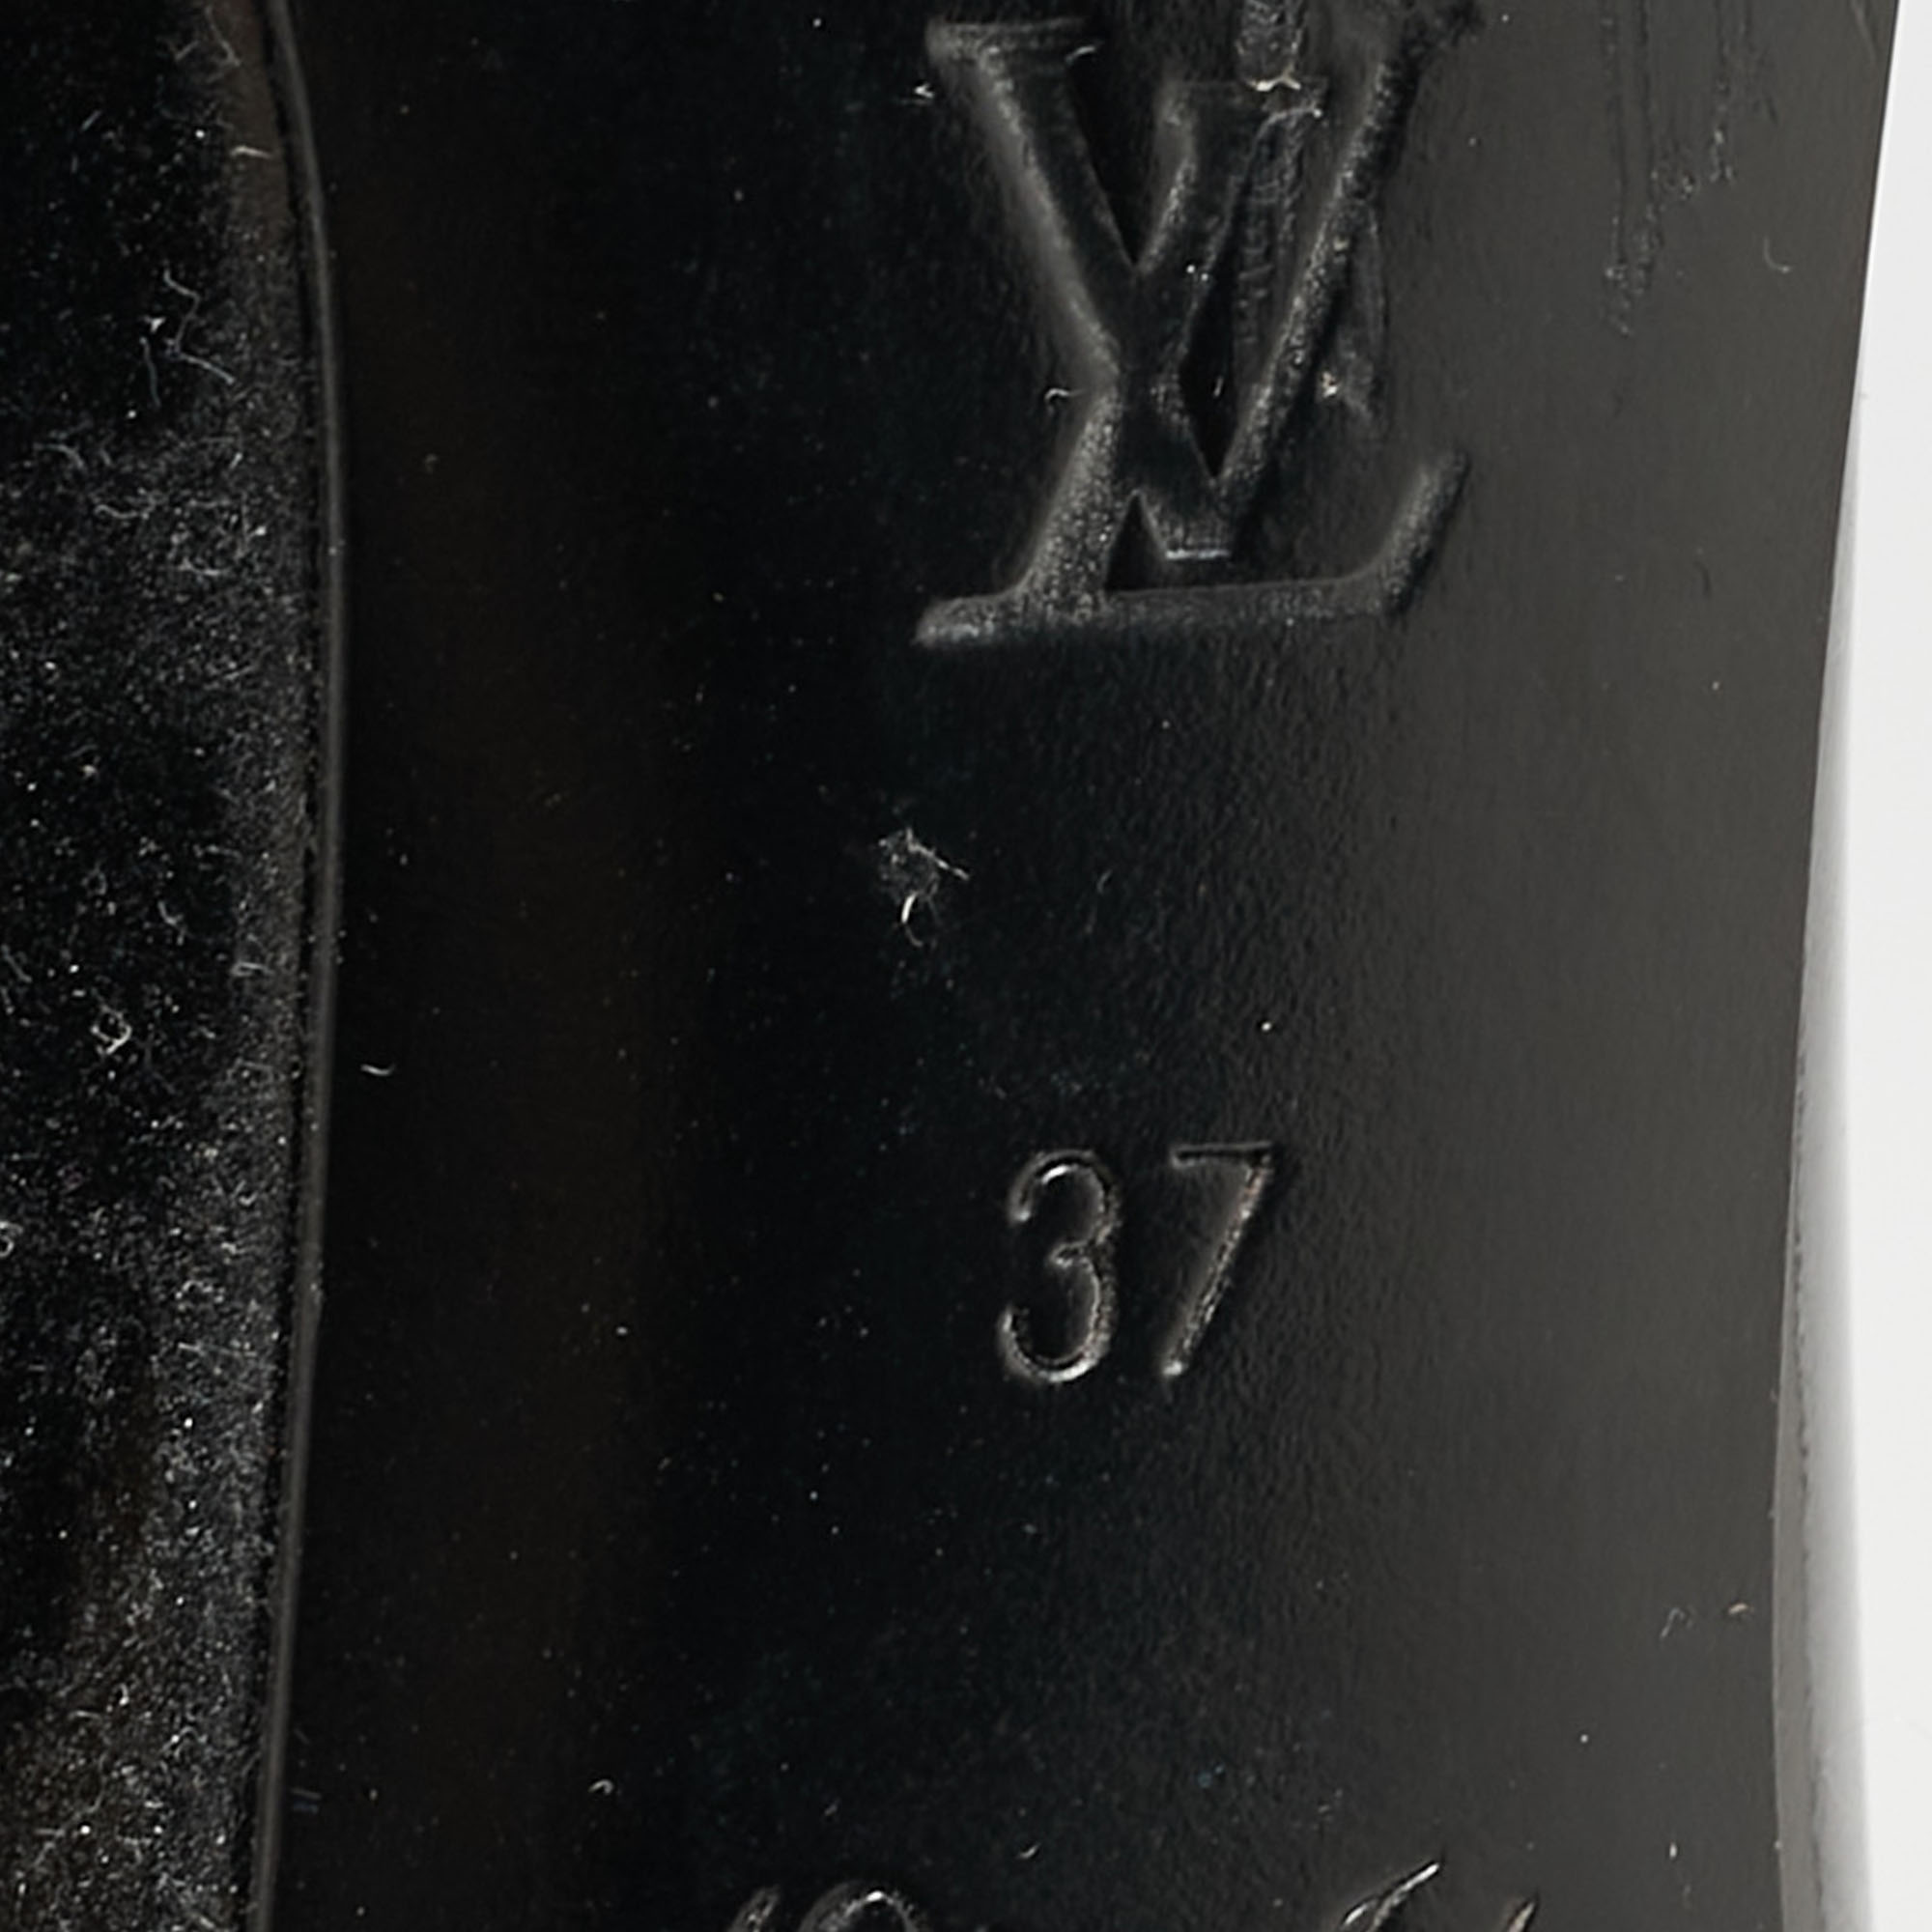 Louis Vuitton Black Patent Leather Pumps Size 37